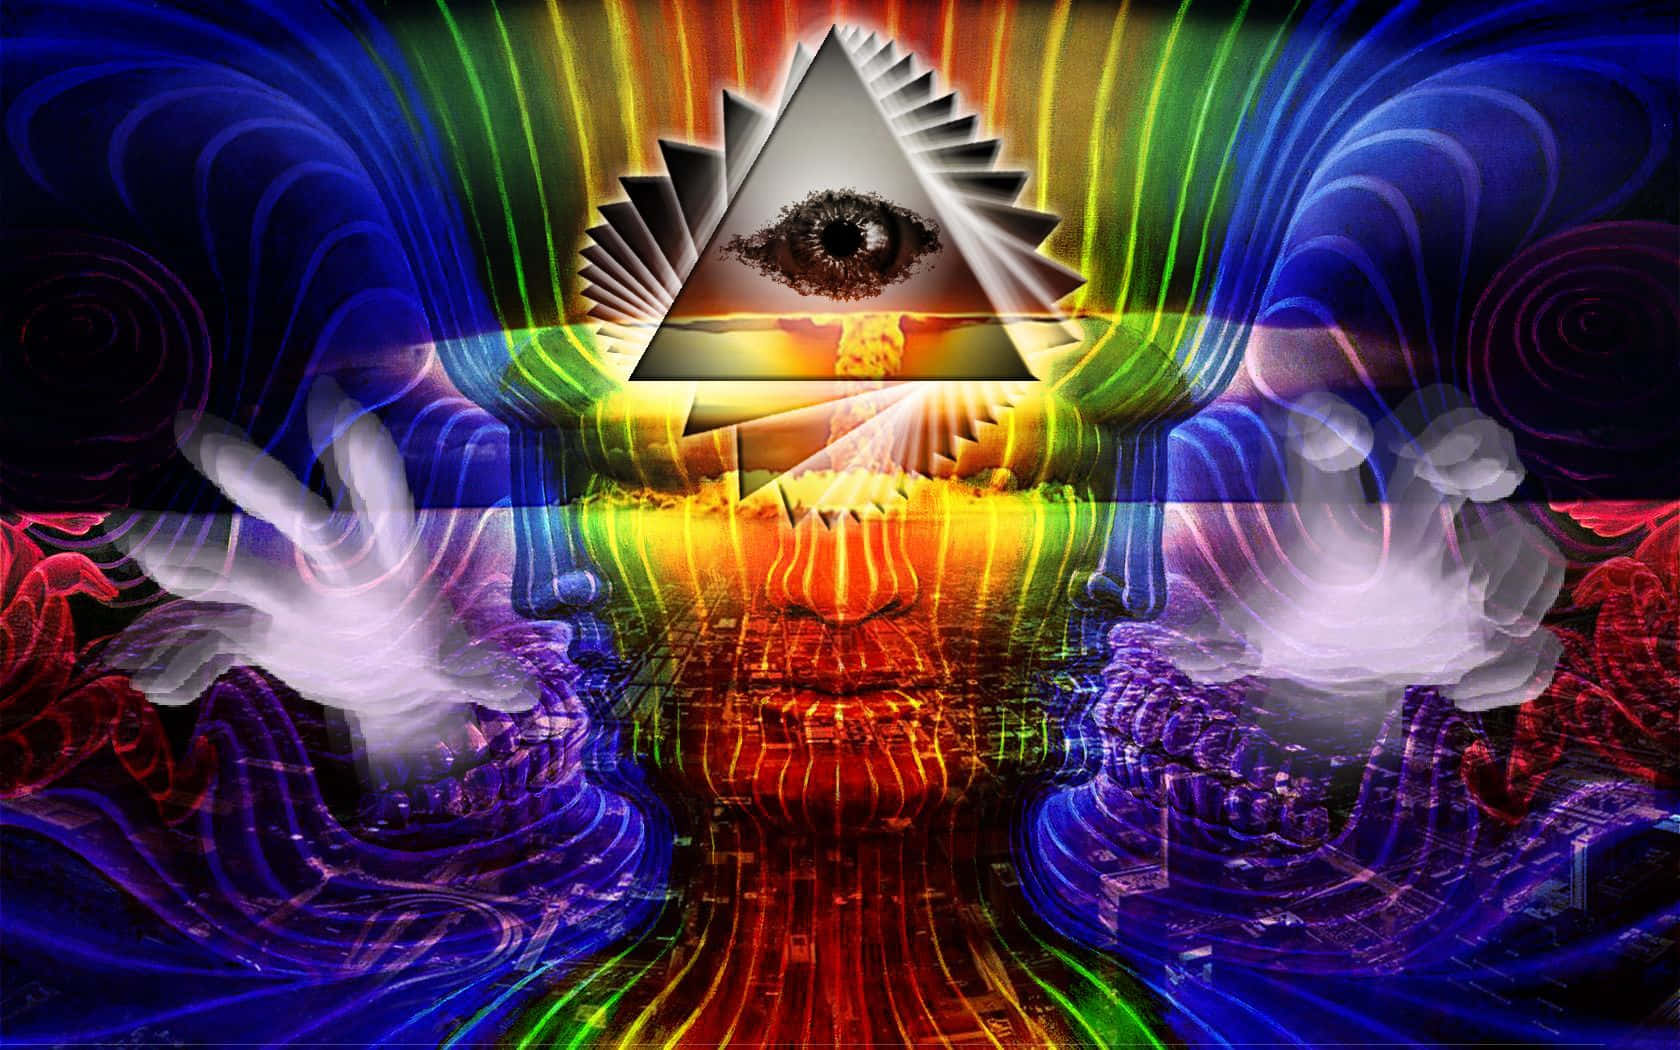 Einpsychedelisches Bild Eines Mannes Mit Einem Dreieck In Seiner Hand